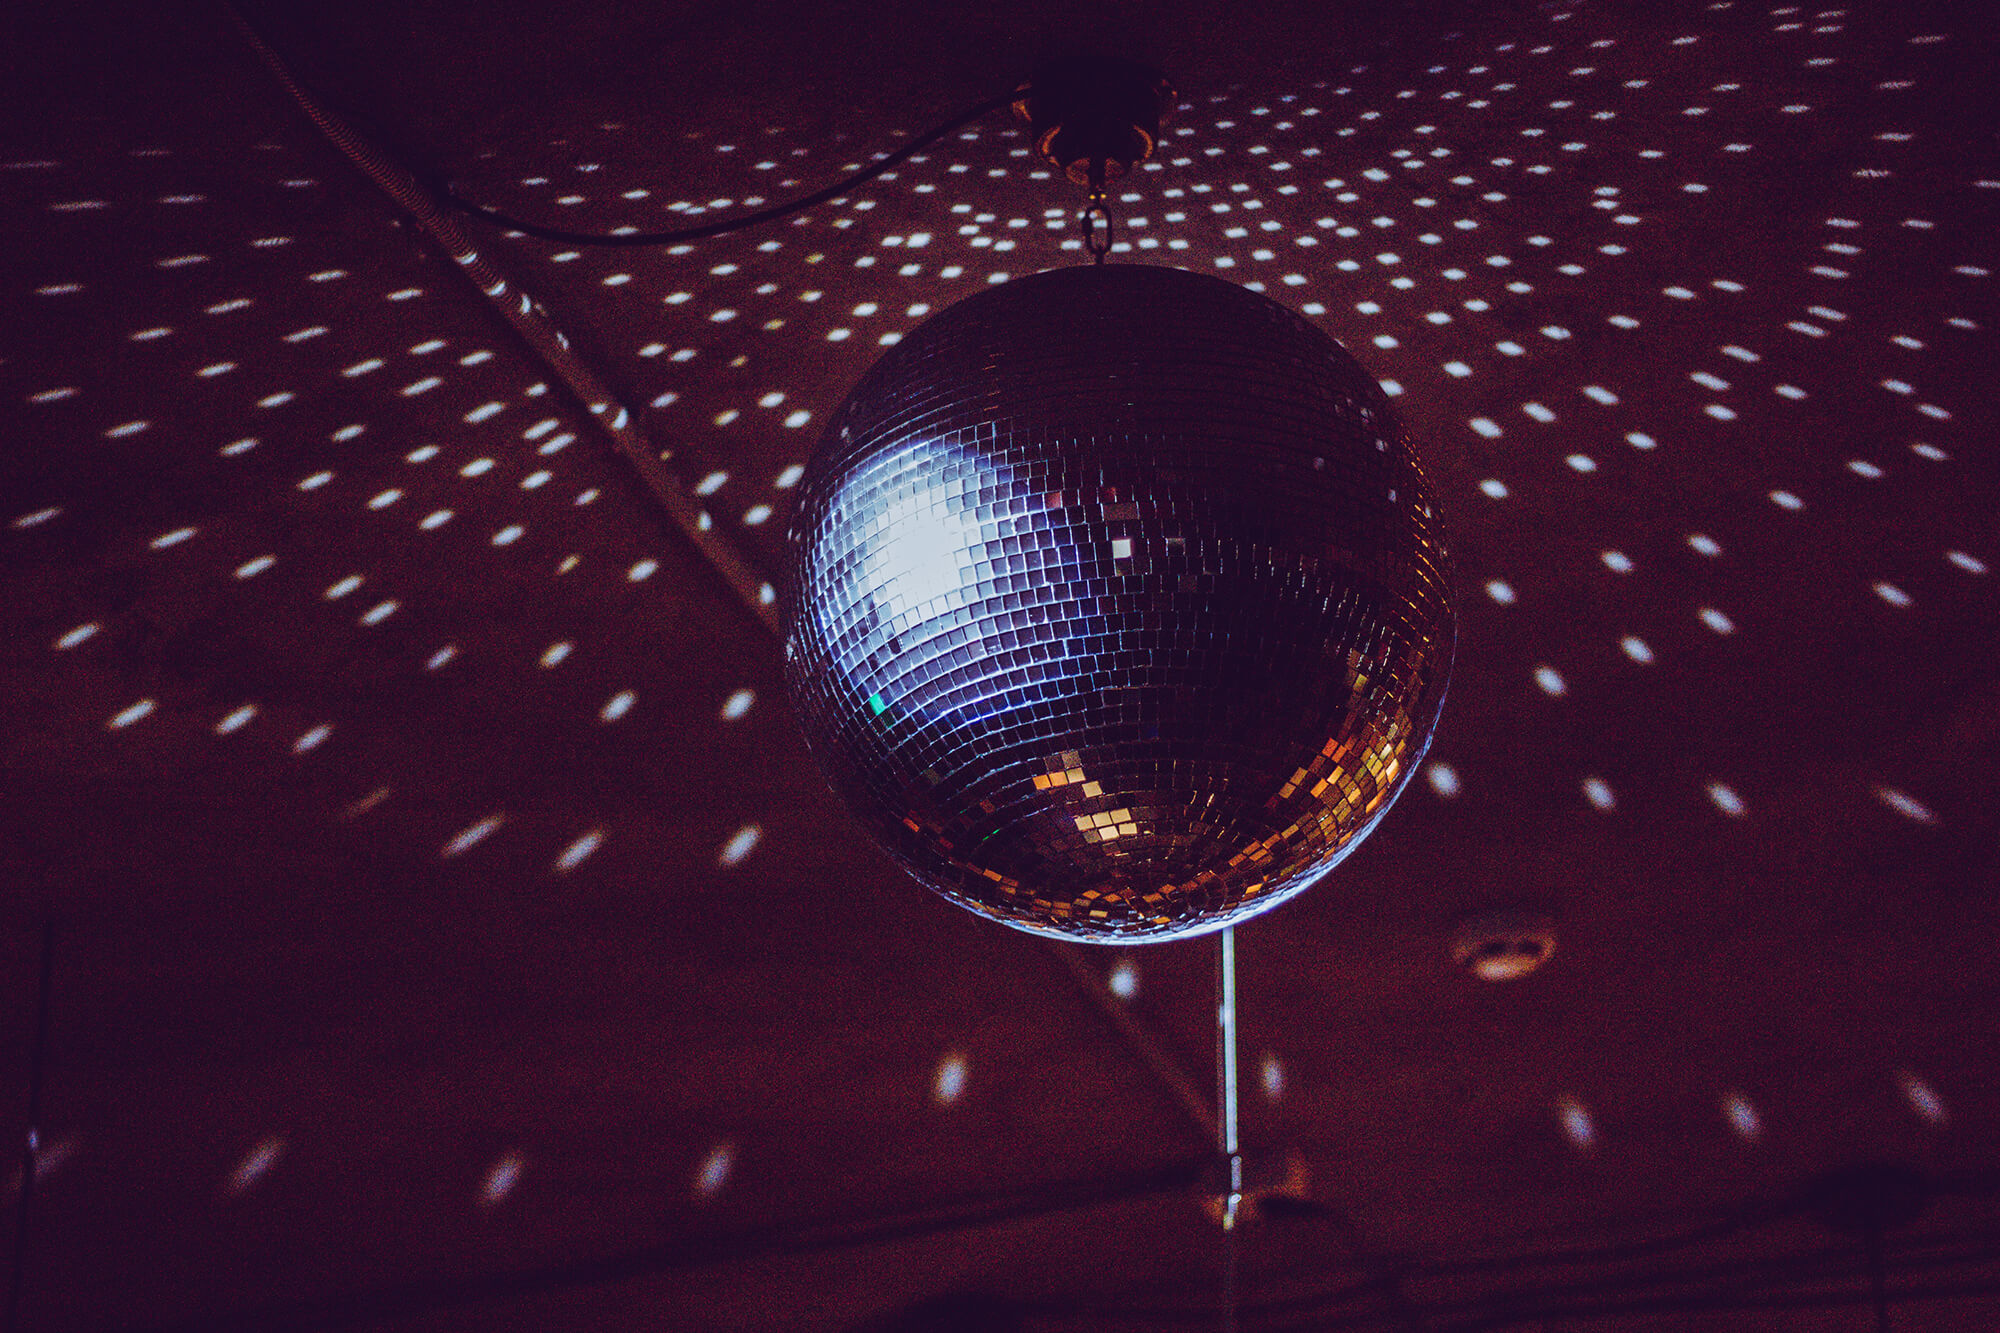 An image of a disco ball